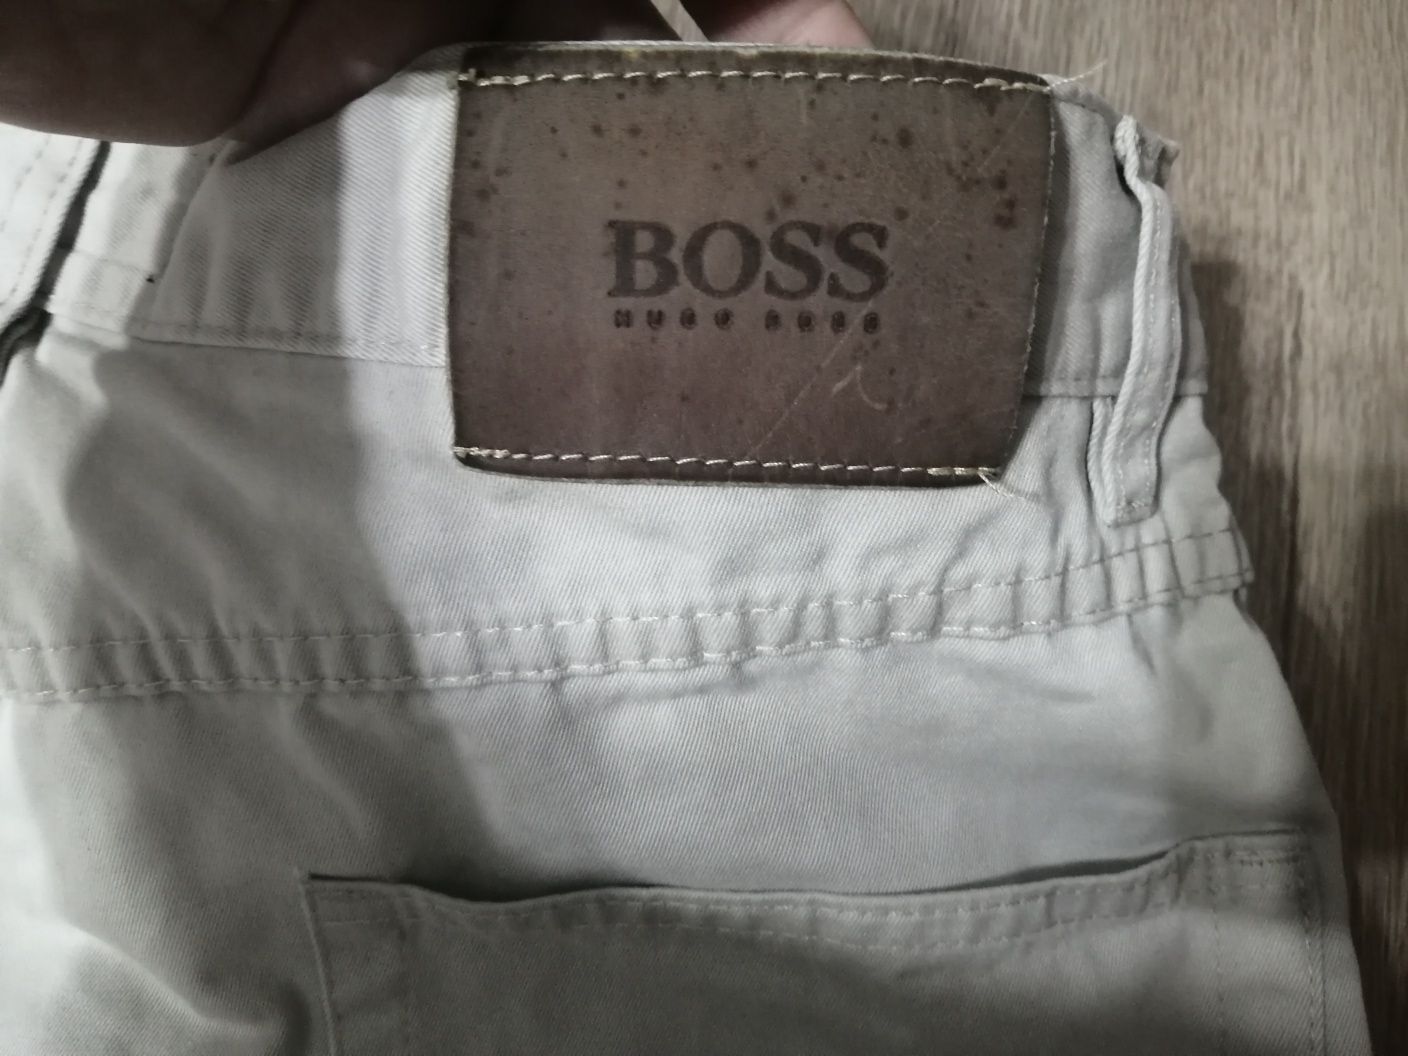 Фирменные джинсы Hugo Boss